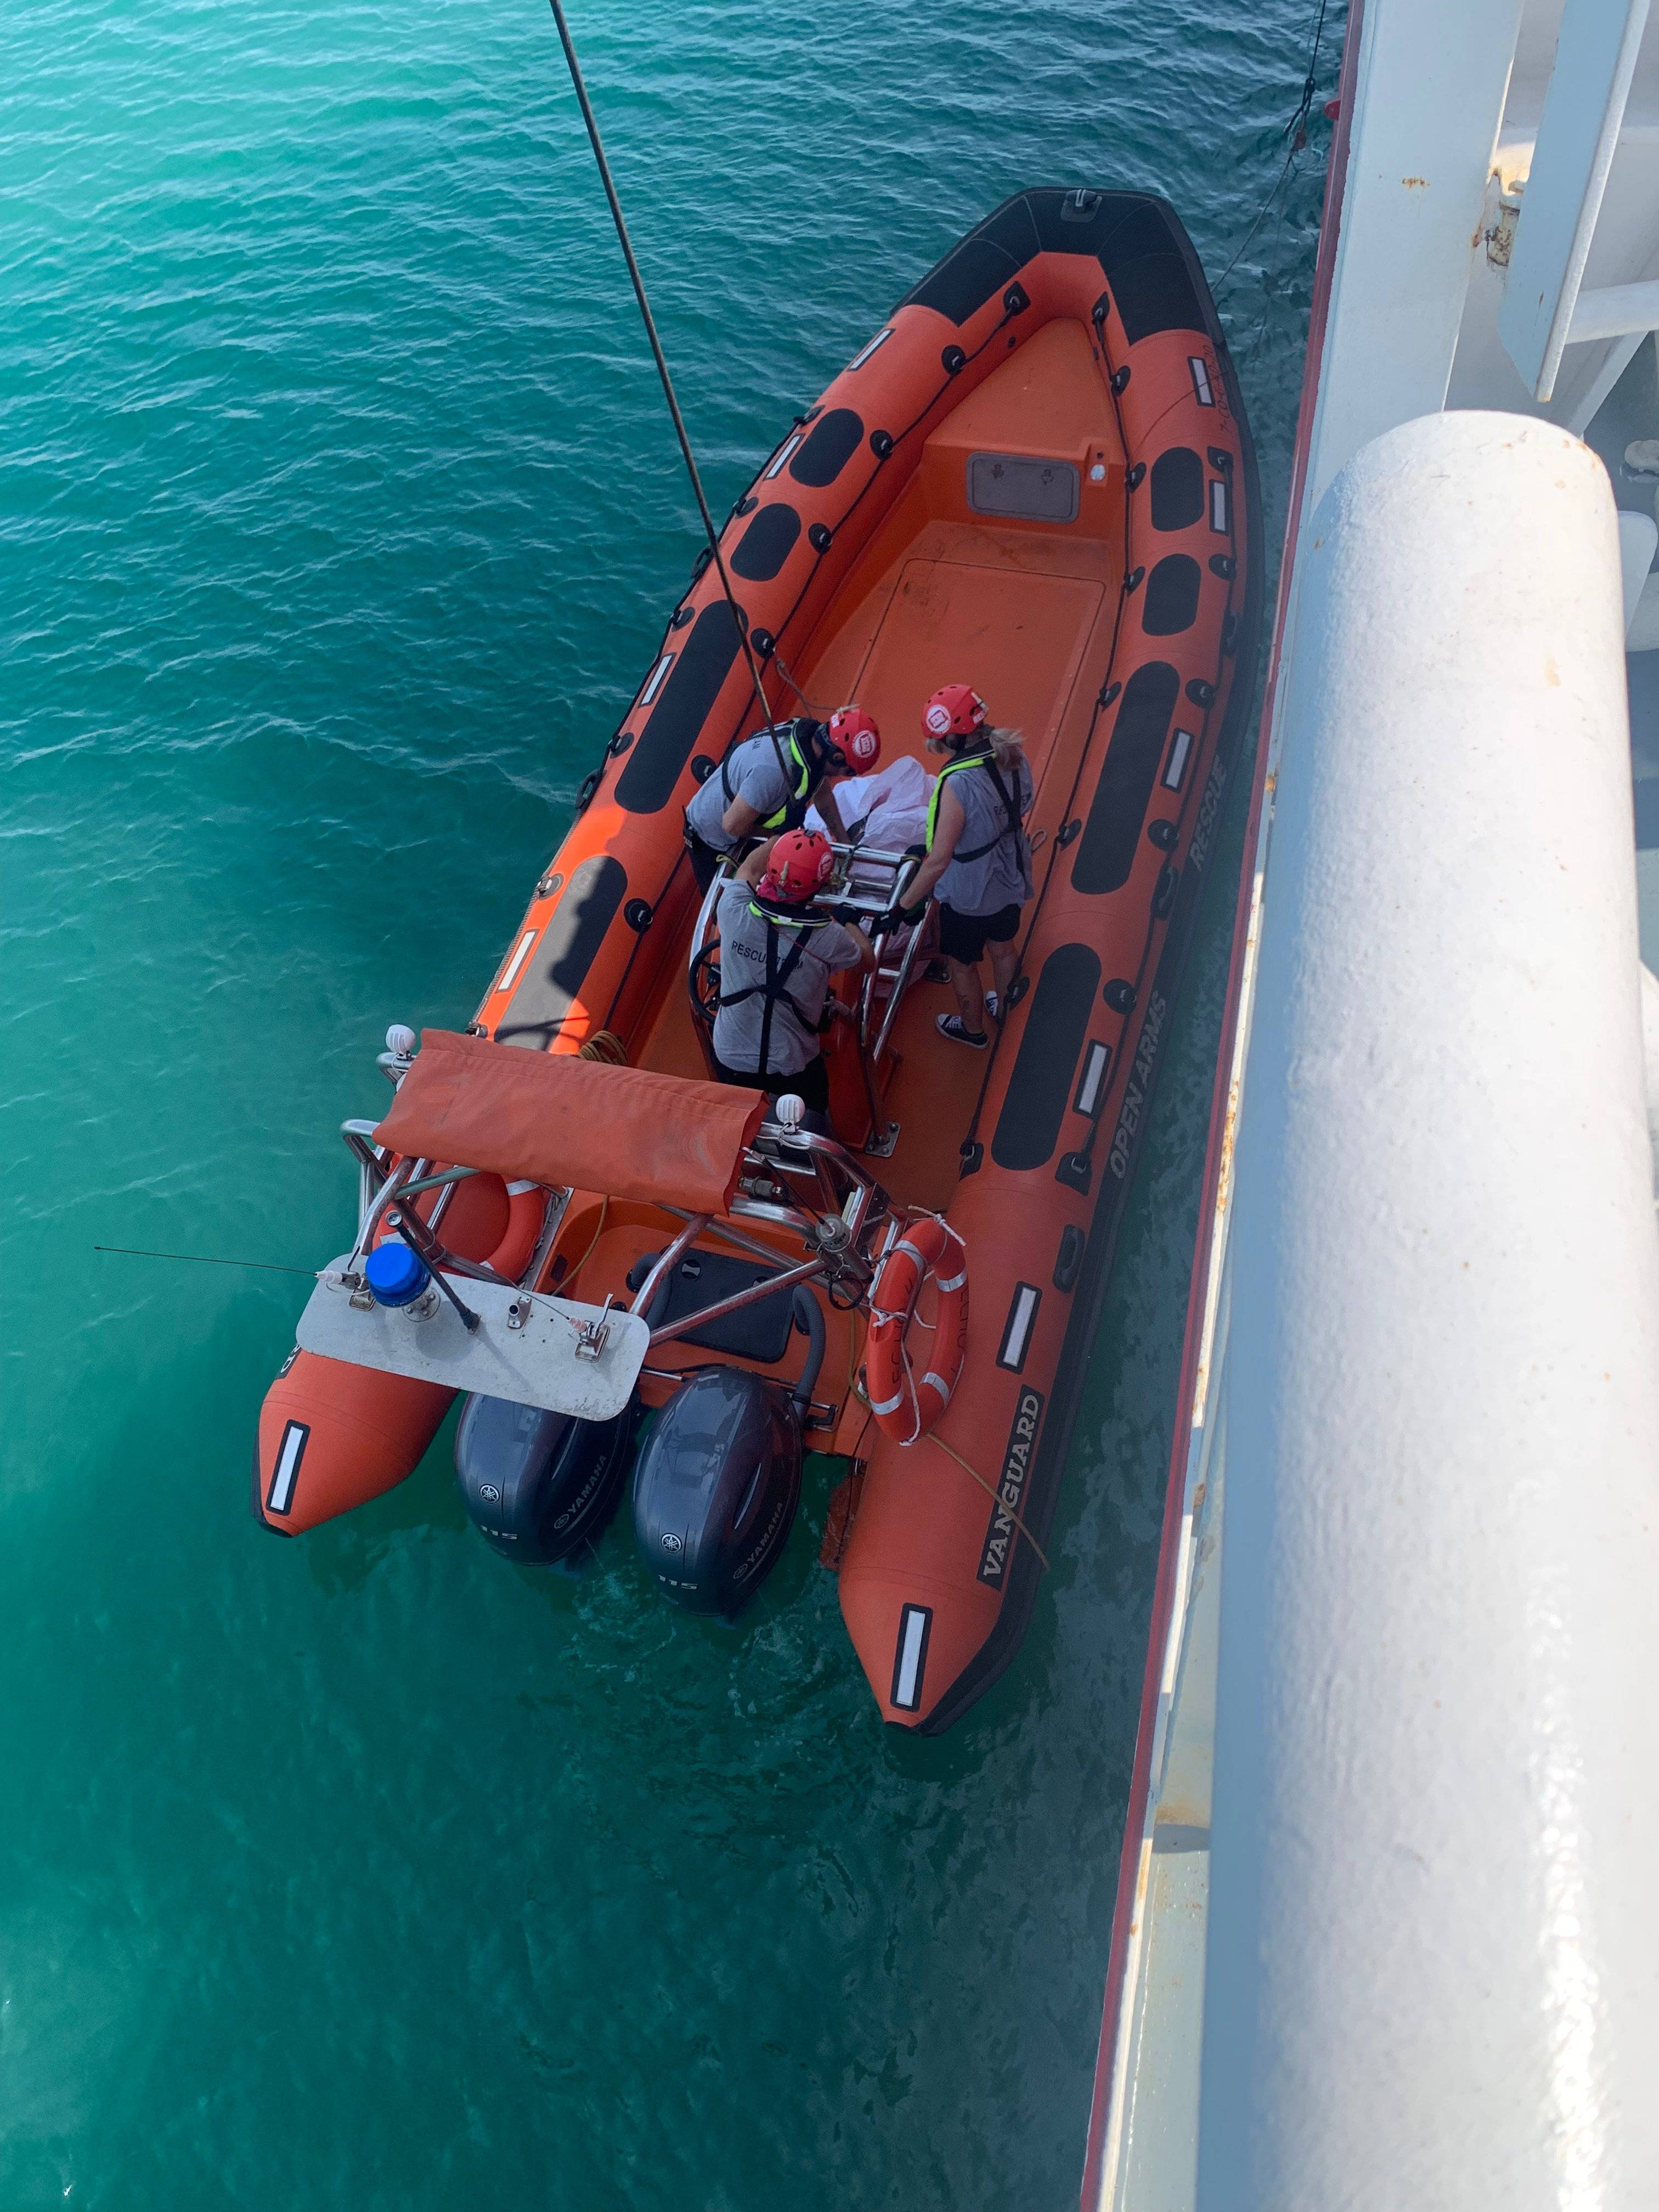 czerwony ponton ratowniczy opuszczony na wodę przy burcie statku. W środku ratownicy przygotowują ratowaną osobę do wciągnięcia na pokład